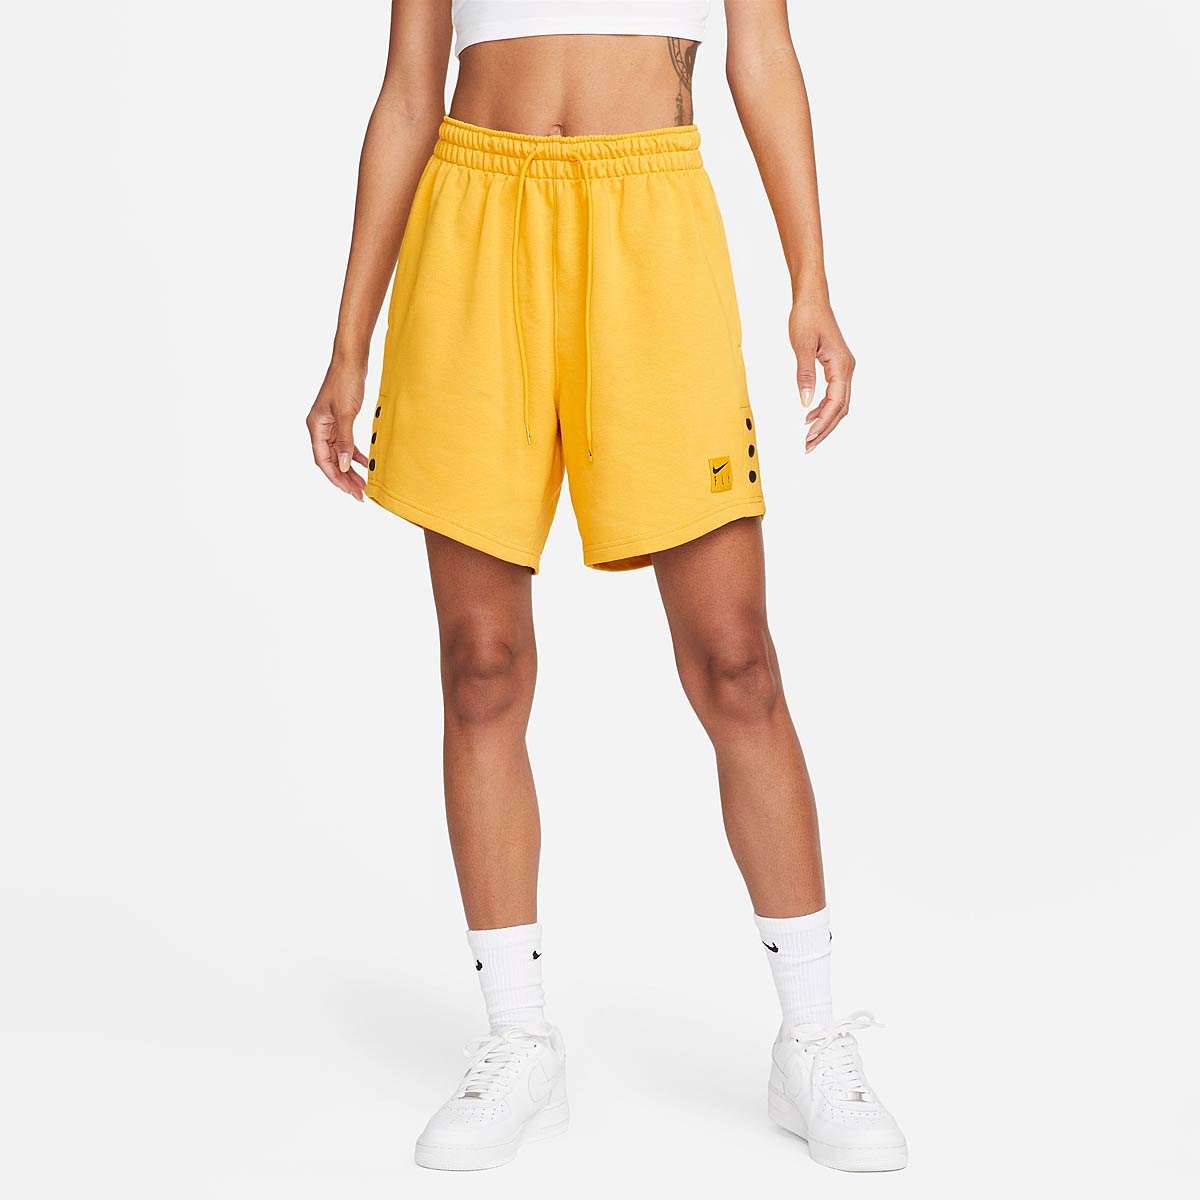 Nike Dri-Fit Prm Ssnl Short Womens, Yellow Ochre/Black